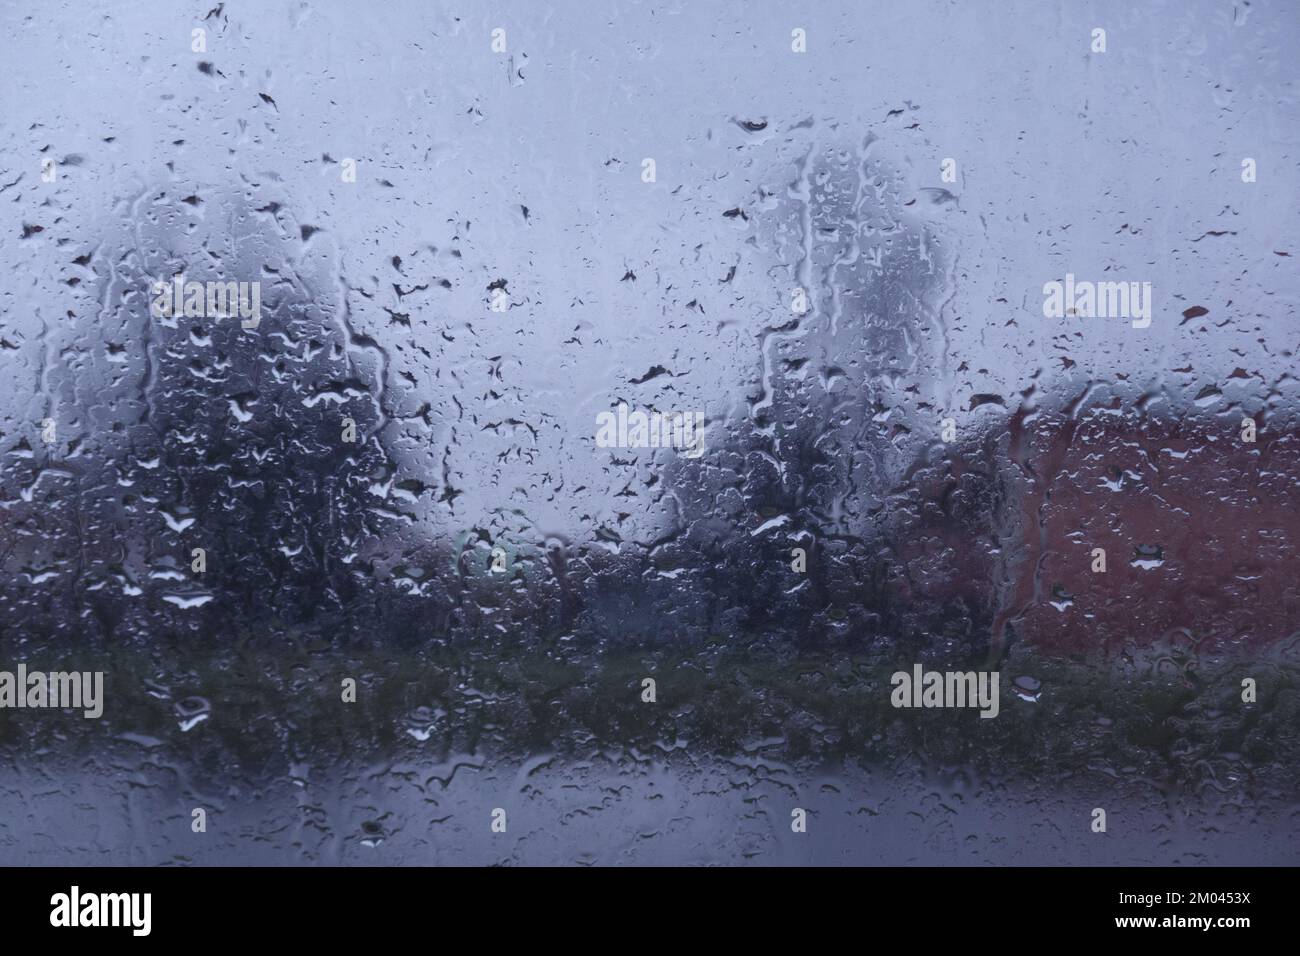 Regen Sie Tropfen auf das Fenster mit einem Hintergrund, der nicht scharf ist Stockfoto